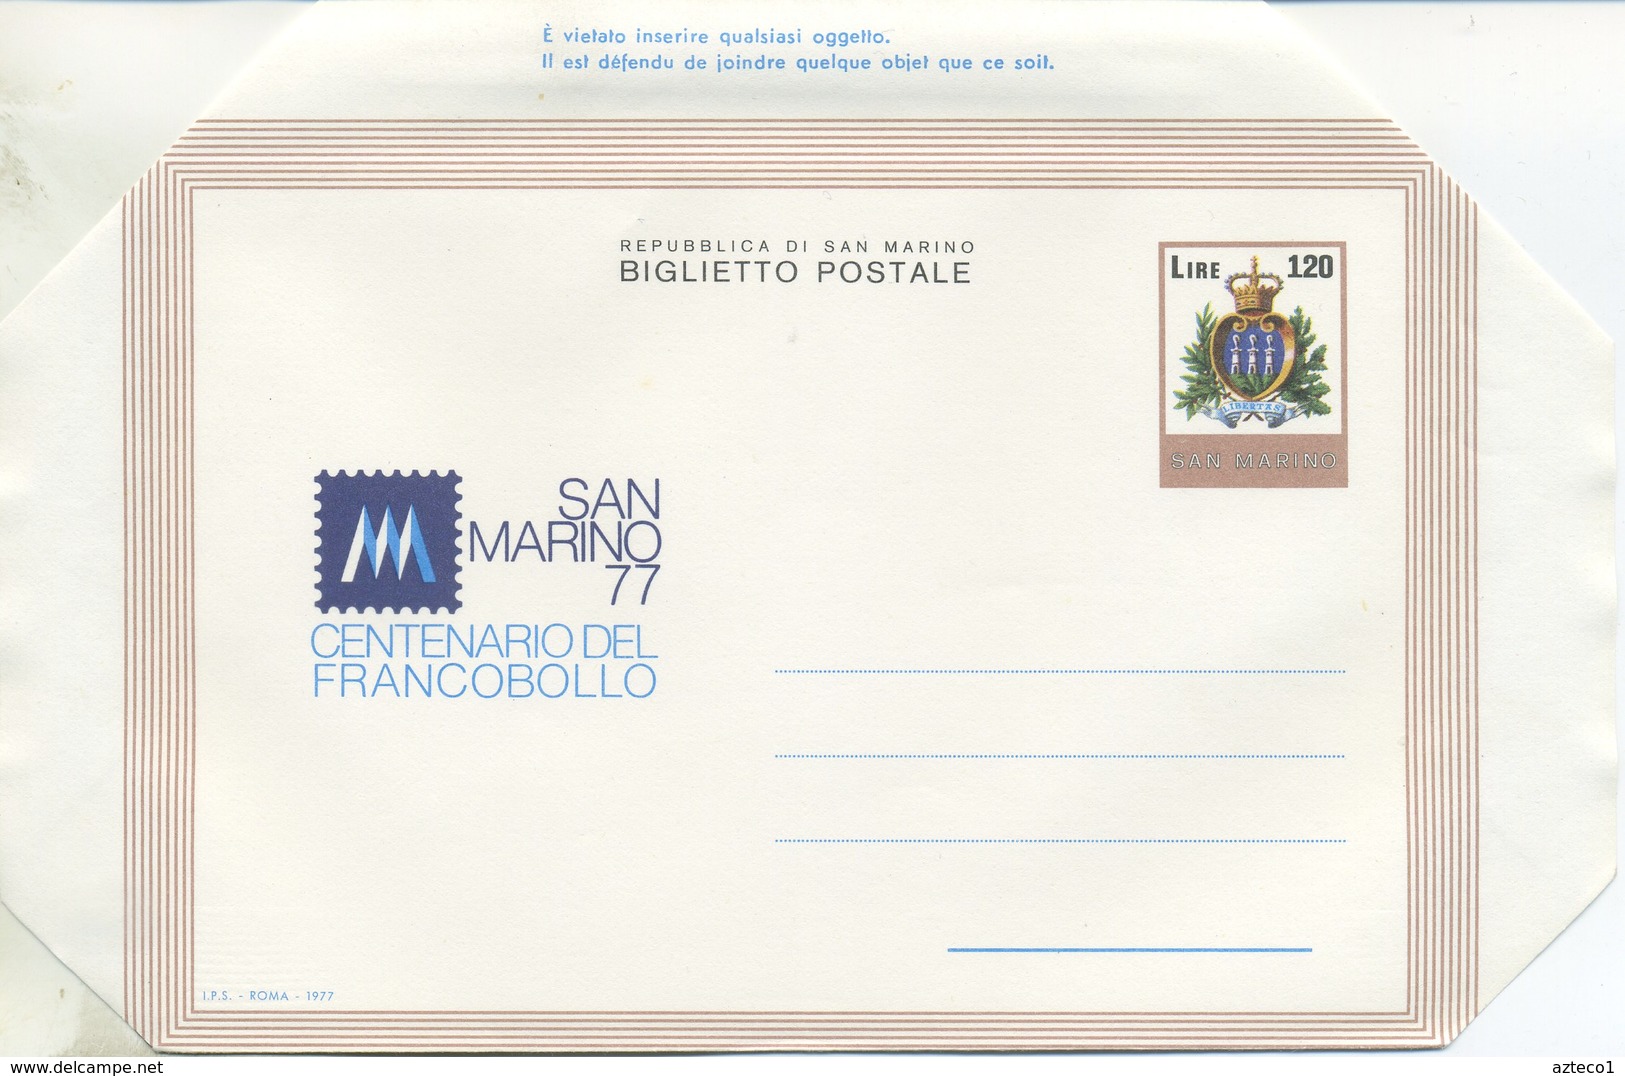 SAN MARINO - BIGLIETTO POSTALE 1977 - CENTENARIO DEL FRANCOBOLLO - NUOVO - Postal Stationery